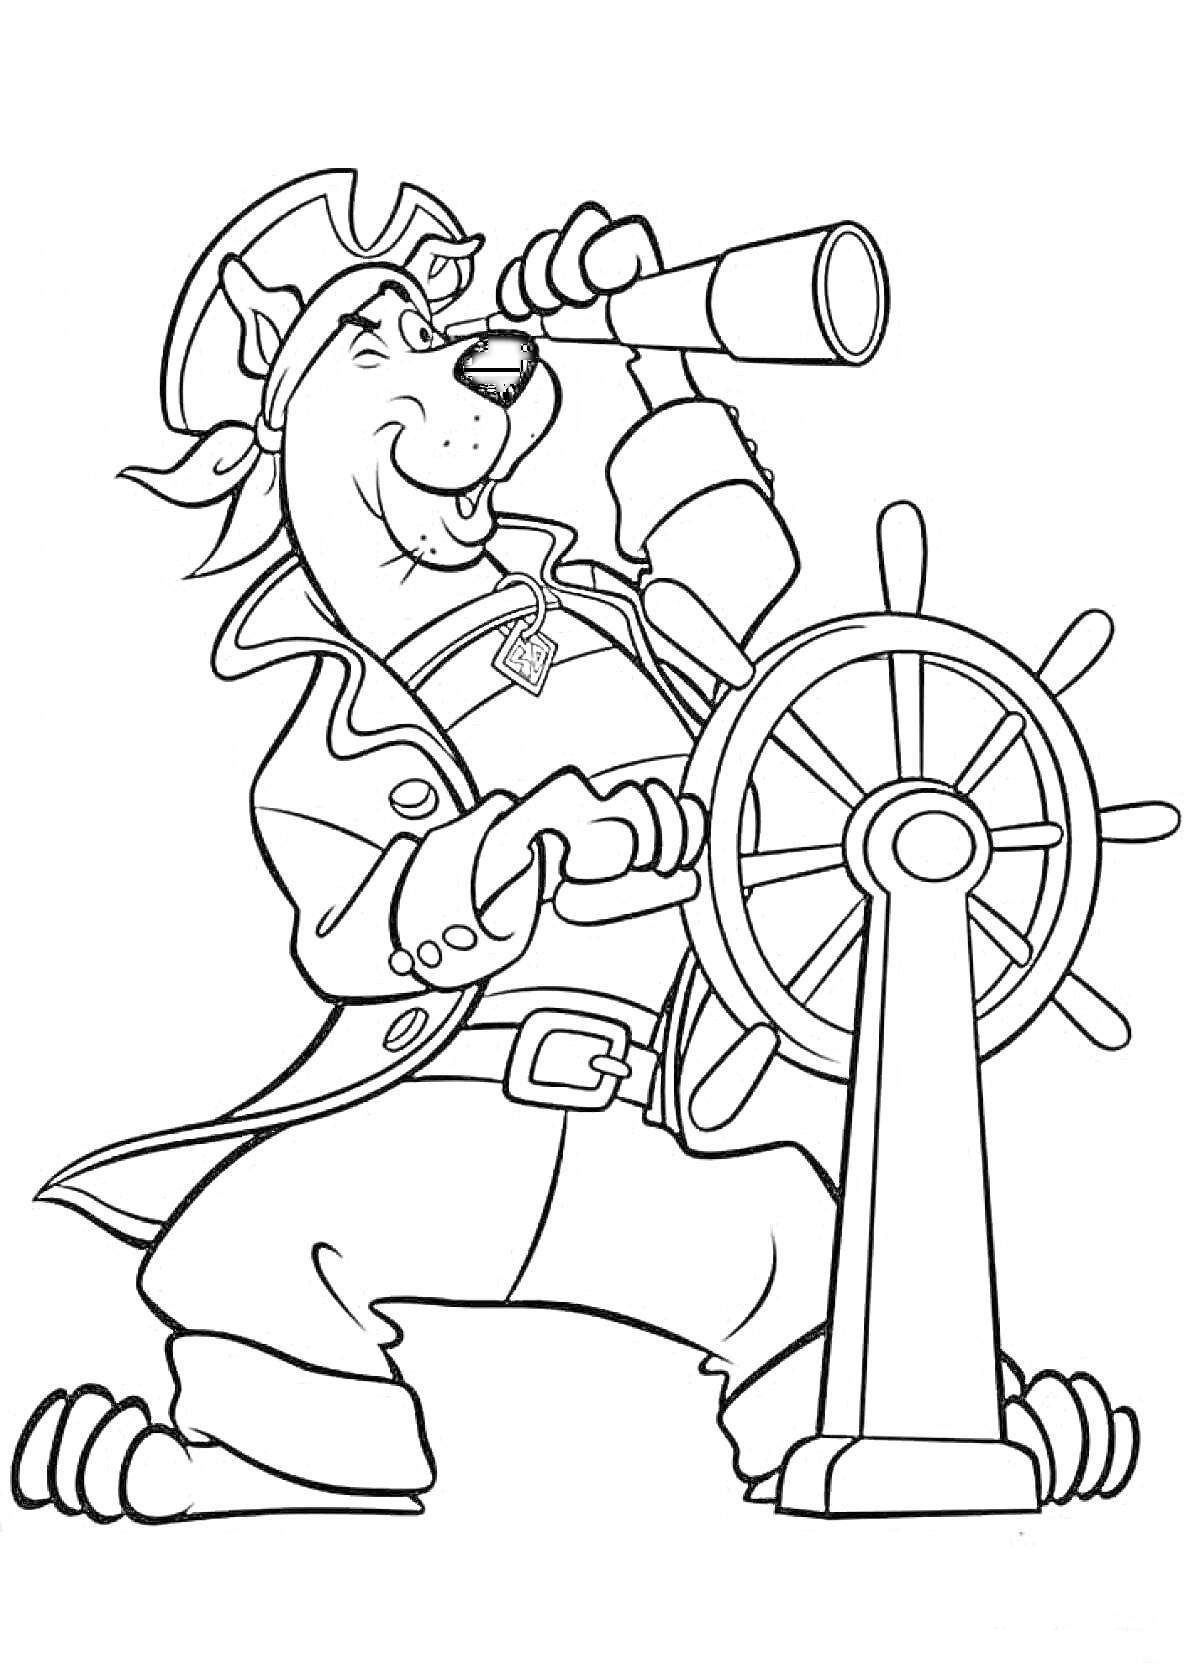 Раскраска Скуби Ду в пиратском костюме с подзорной трубой у штурвала